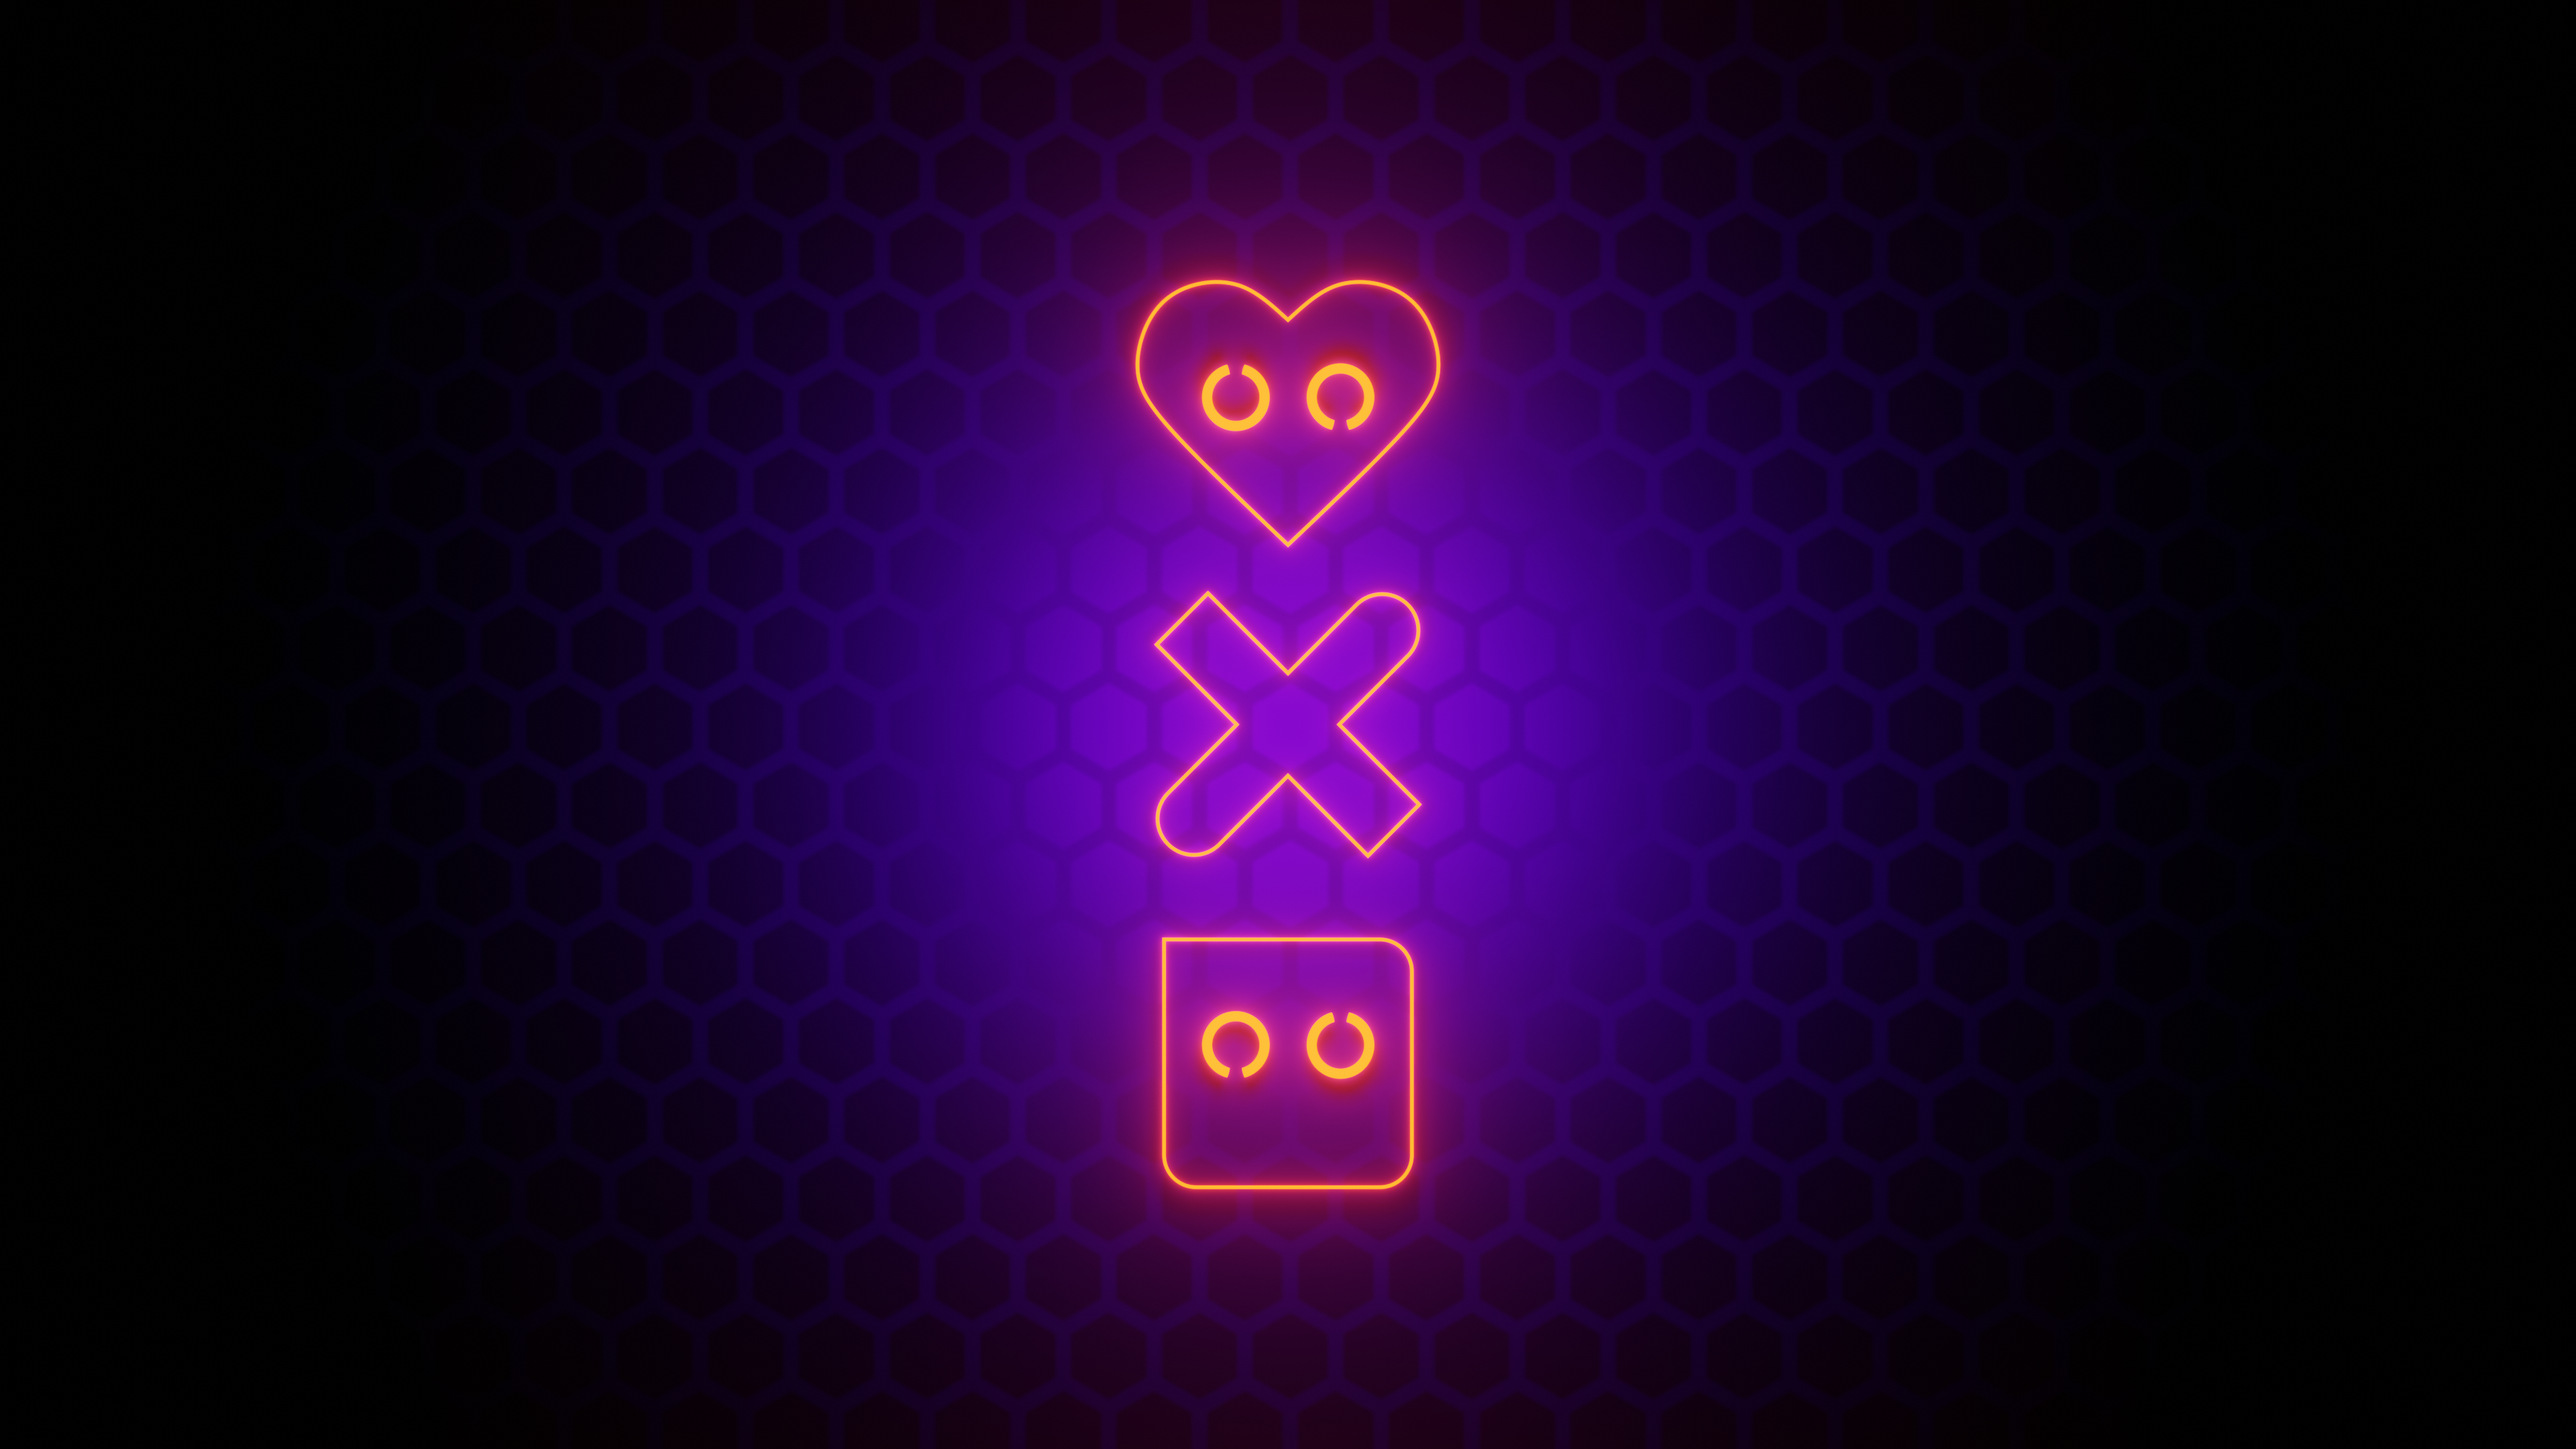 Love Death & Robots by Sonixx